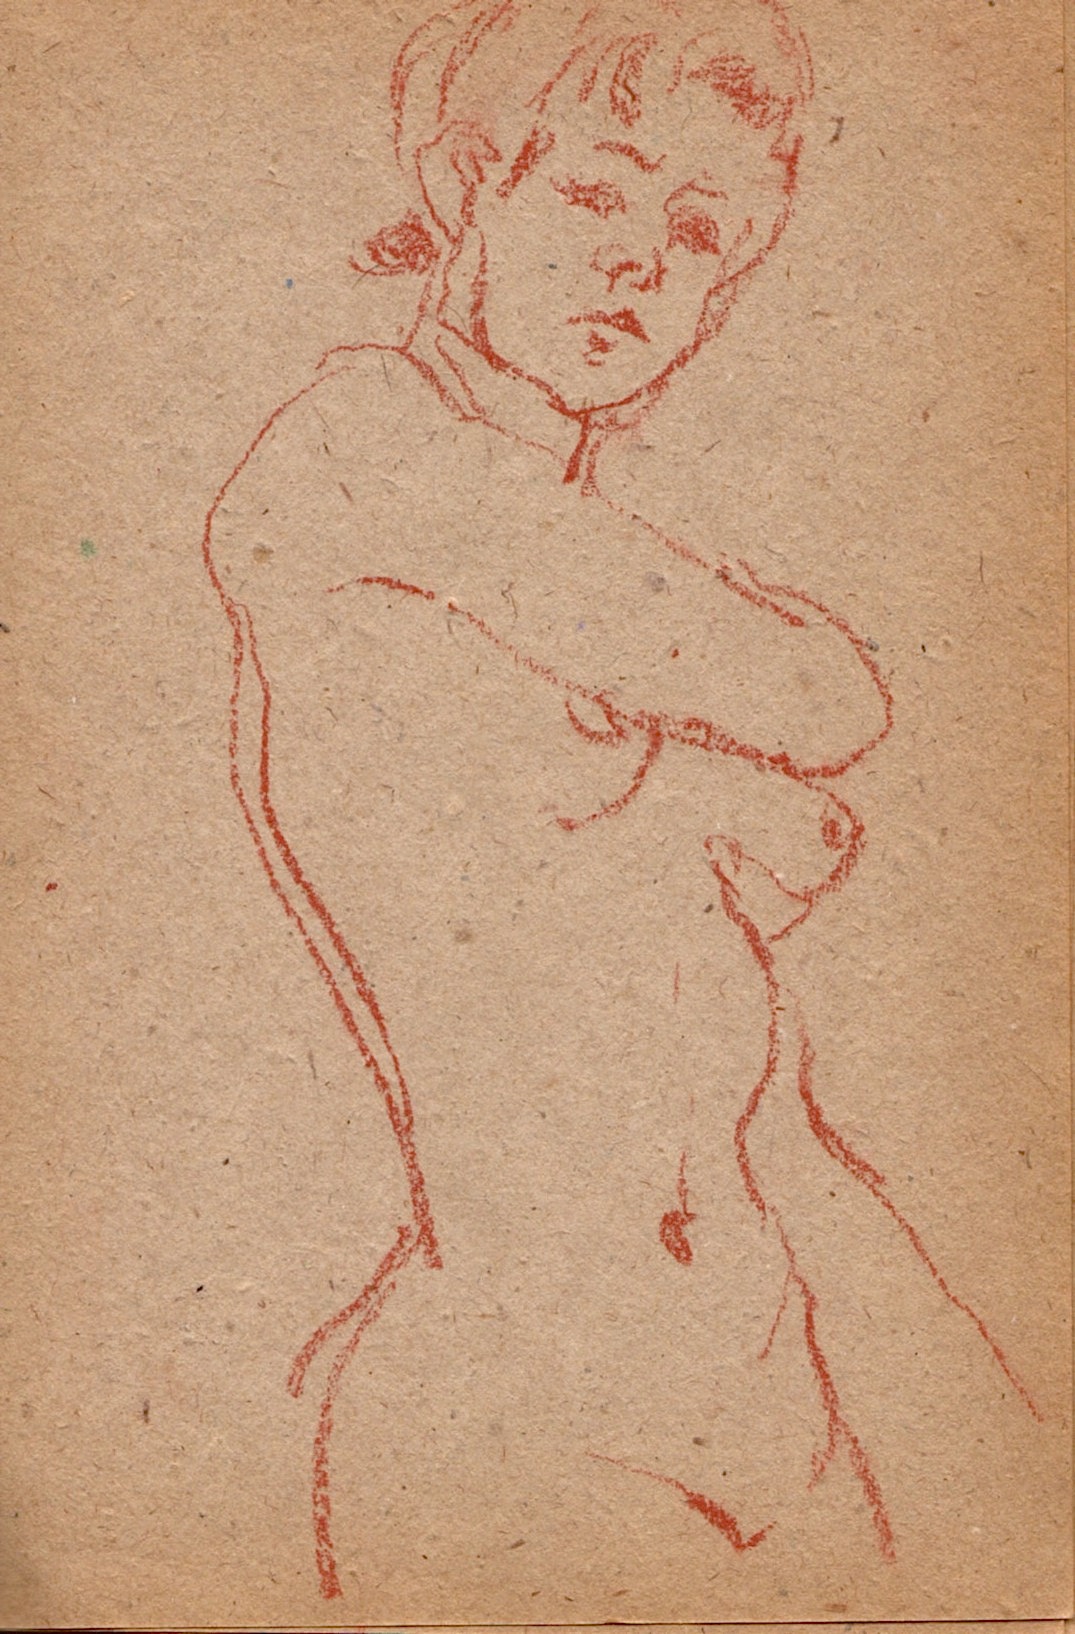 nude drawings